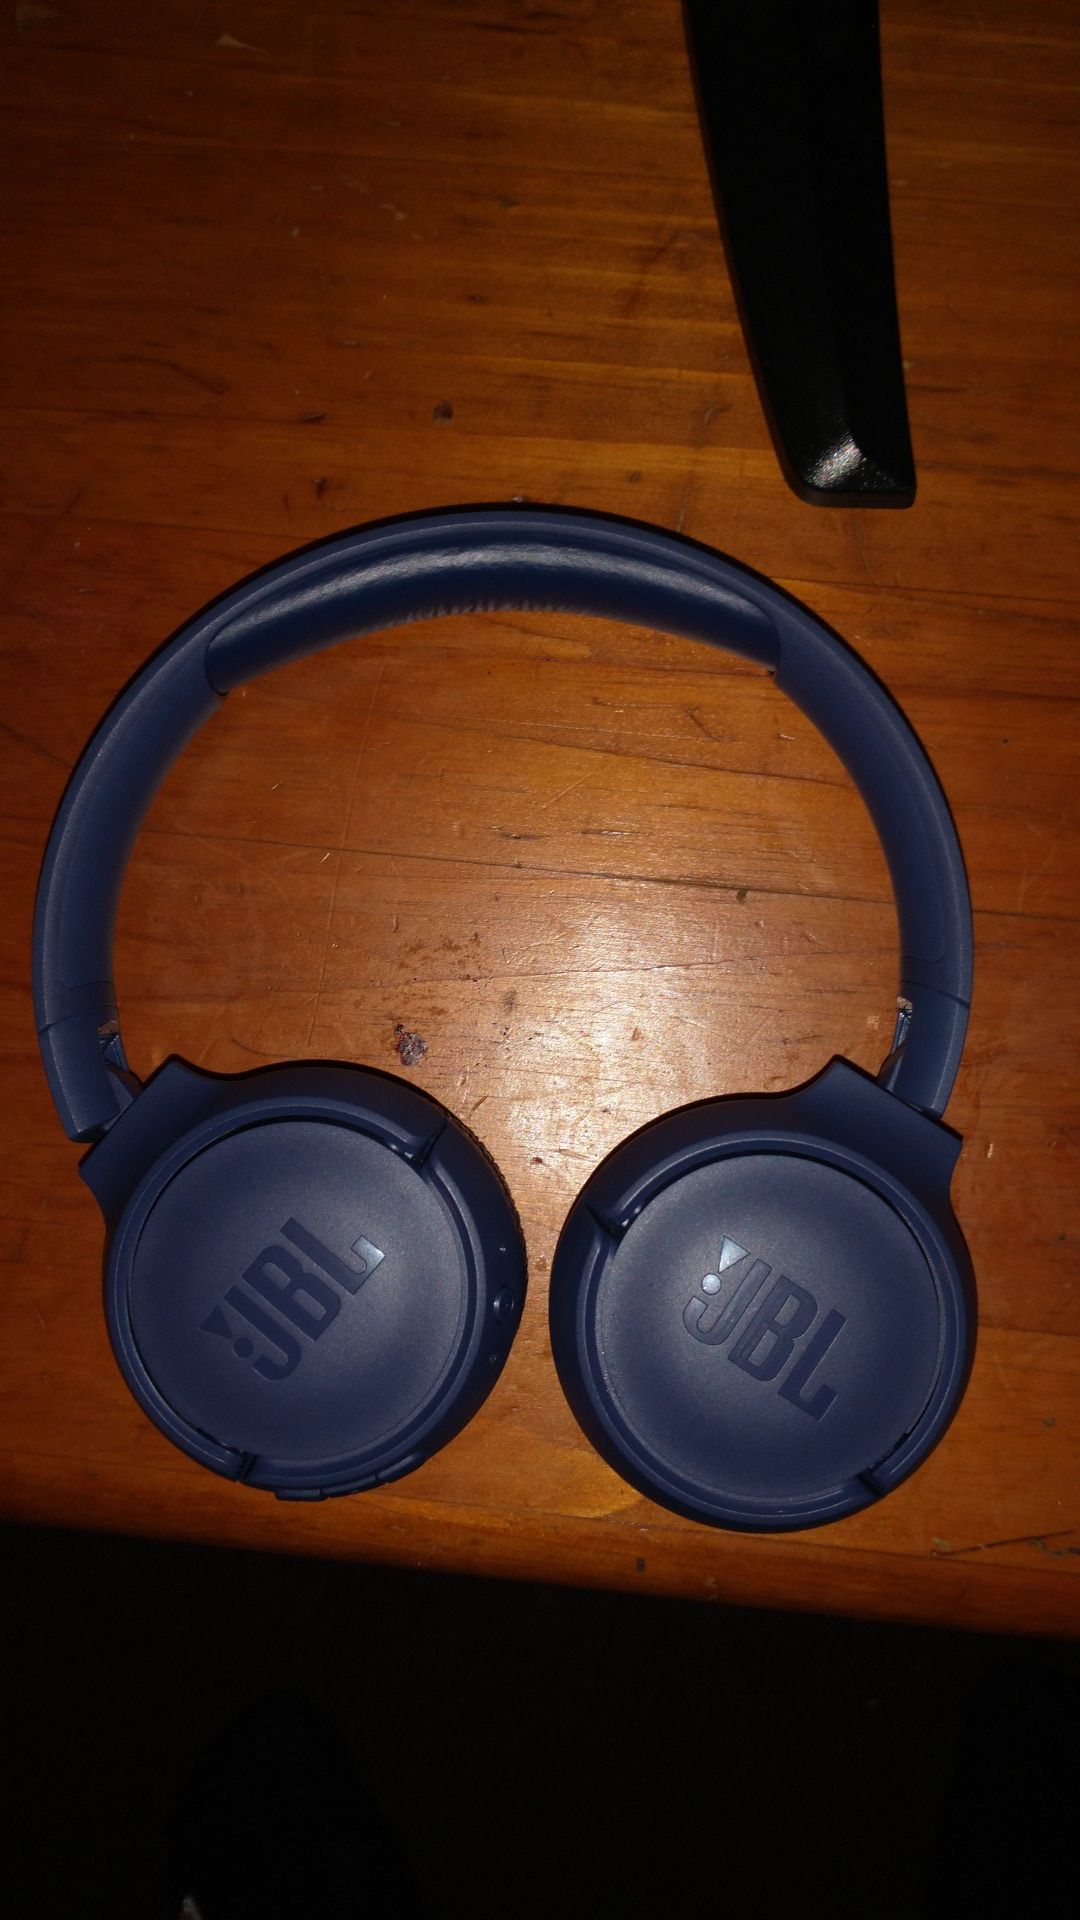 JBL bluetooth headphones and Bluetooth speaker